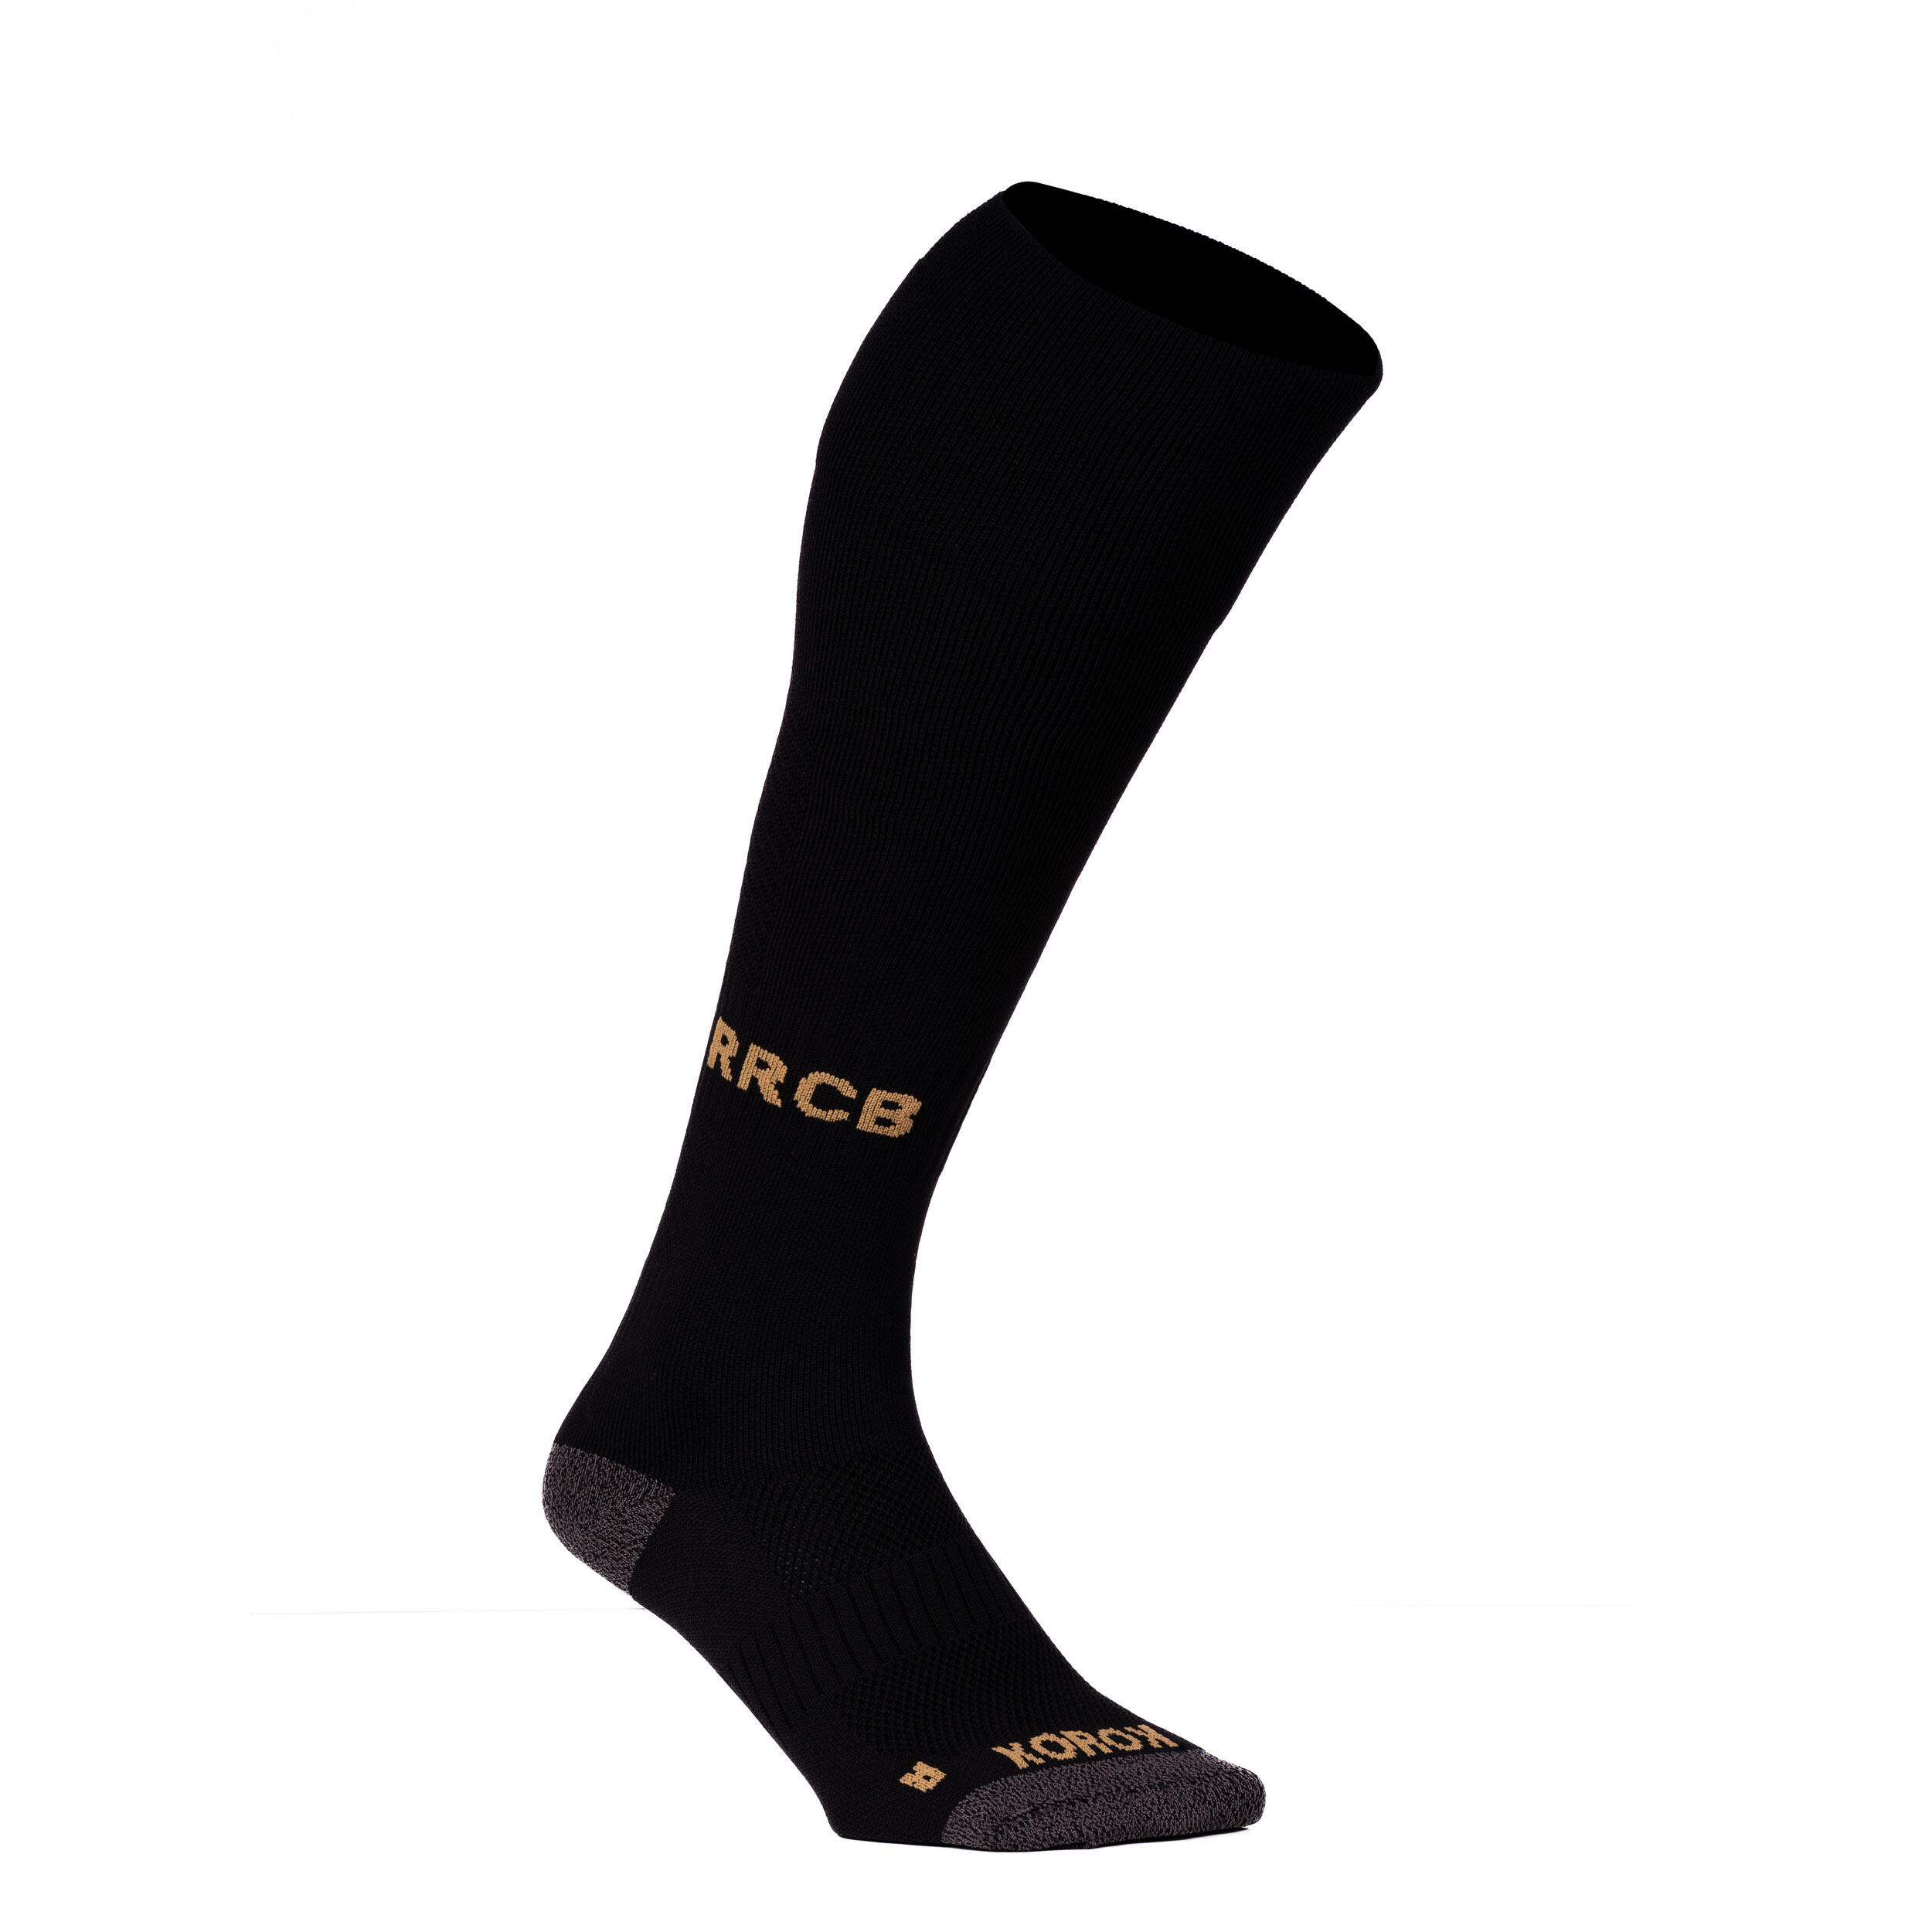 Adult Socks FH900 Racing - Black 1/4